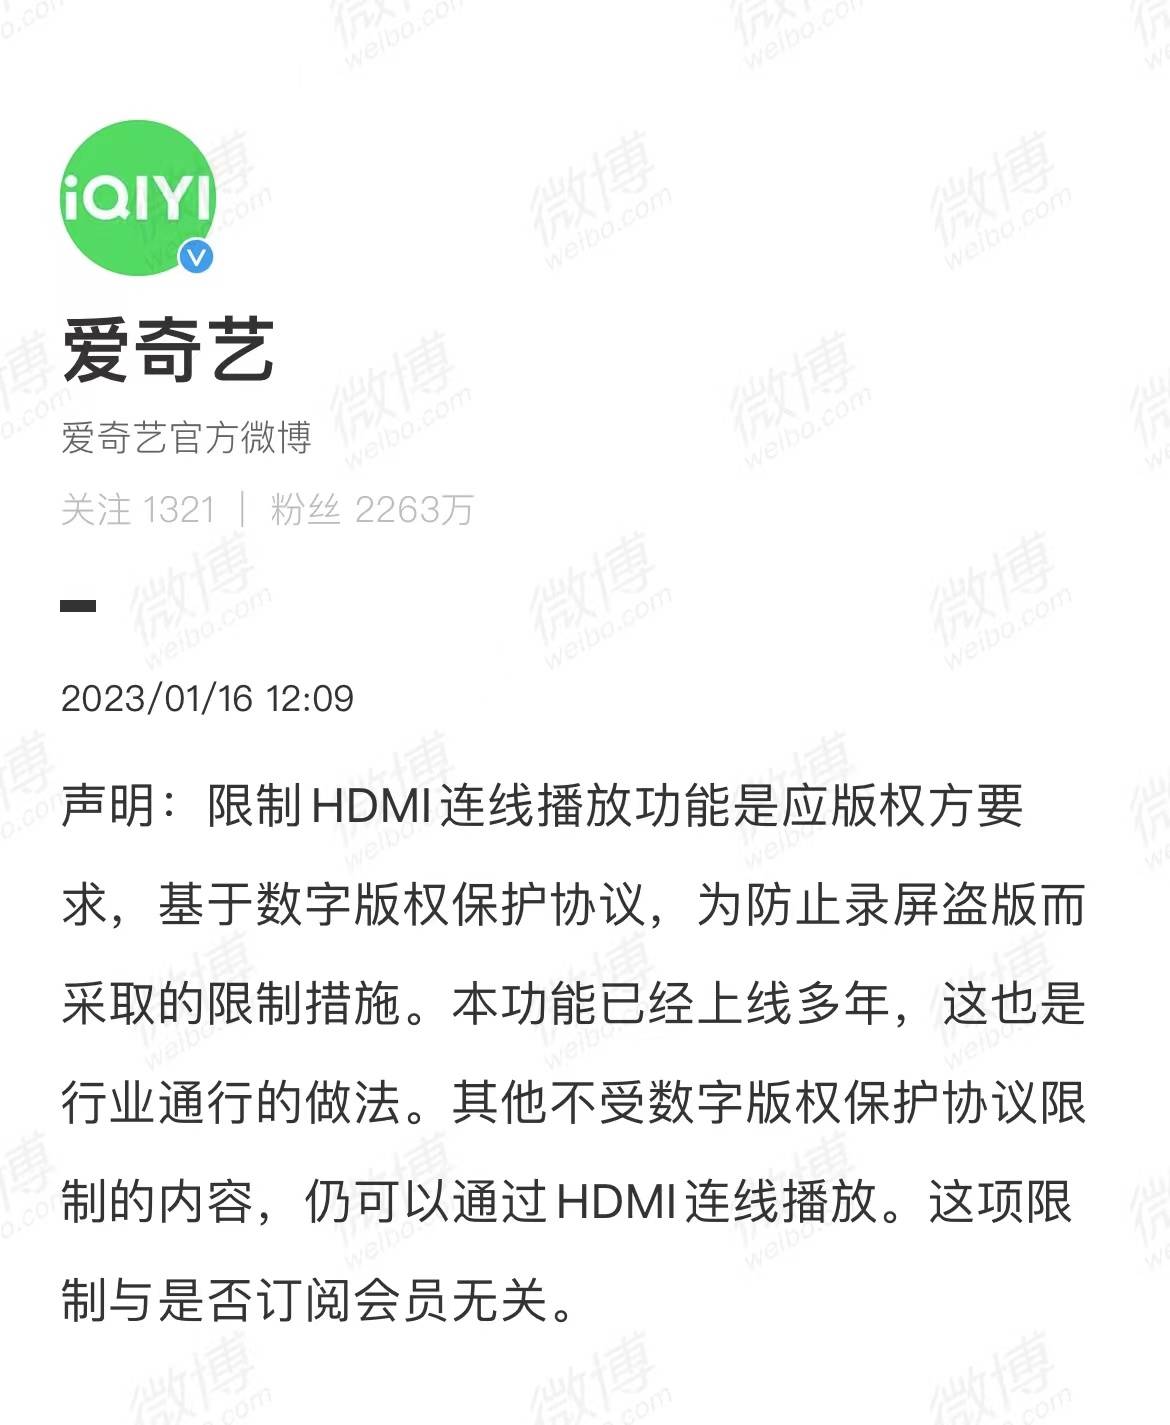 1 30 - Didi Chuxing riprende la registrazione di nuovi utenti / Apple potrebbe rilasciare nuovi prodotti questa settimana / iQiyi risponde al divieto di riproduzione della connessione HDMI